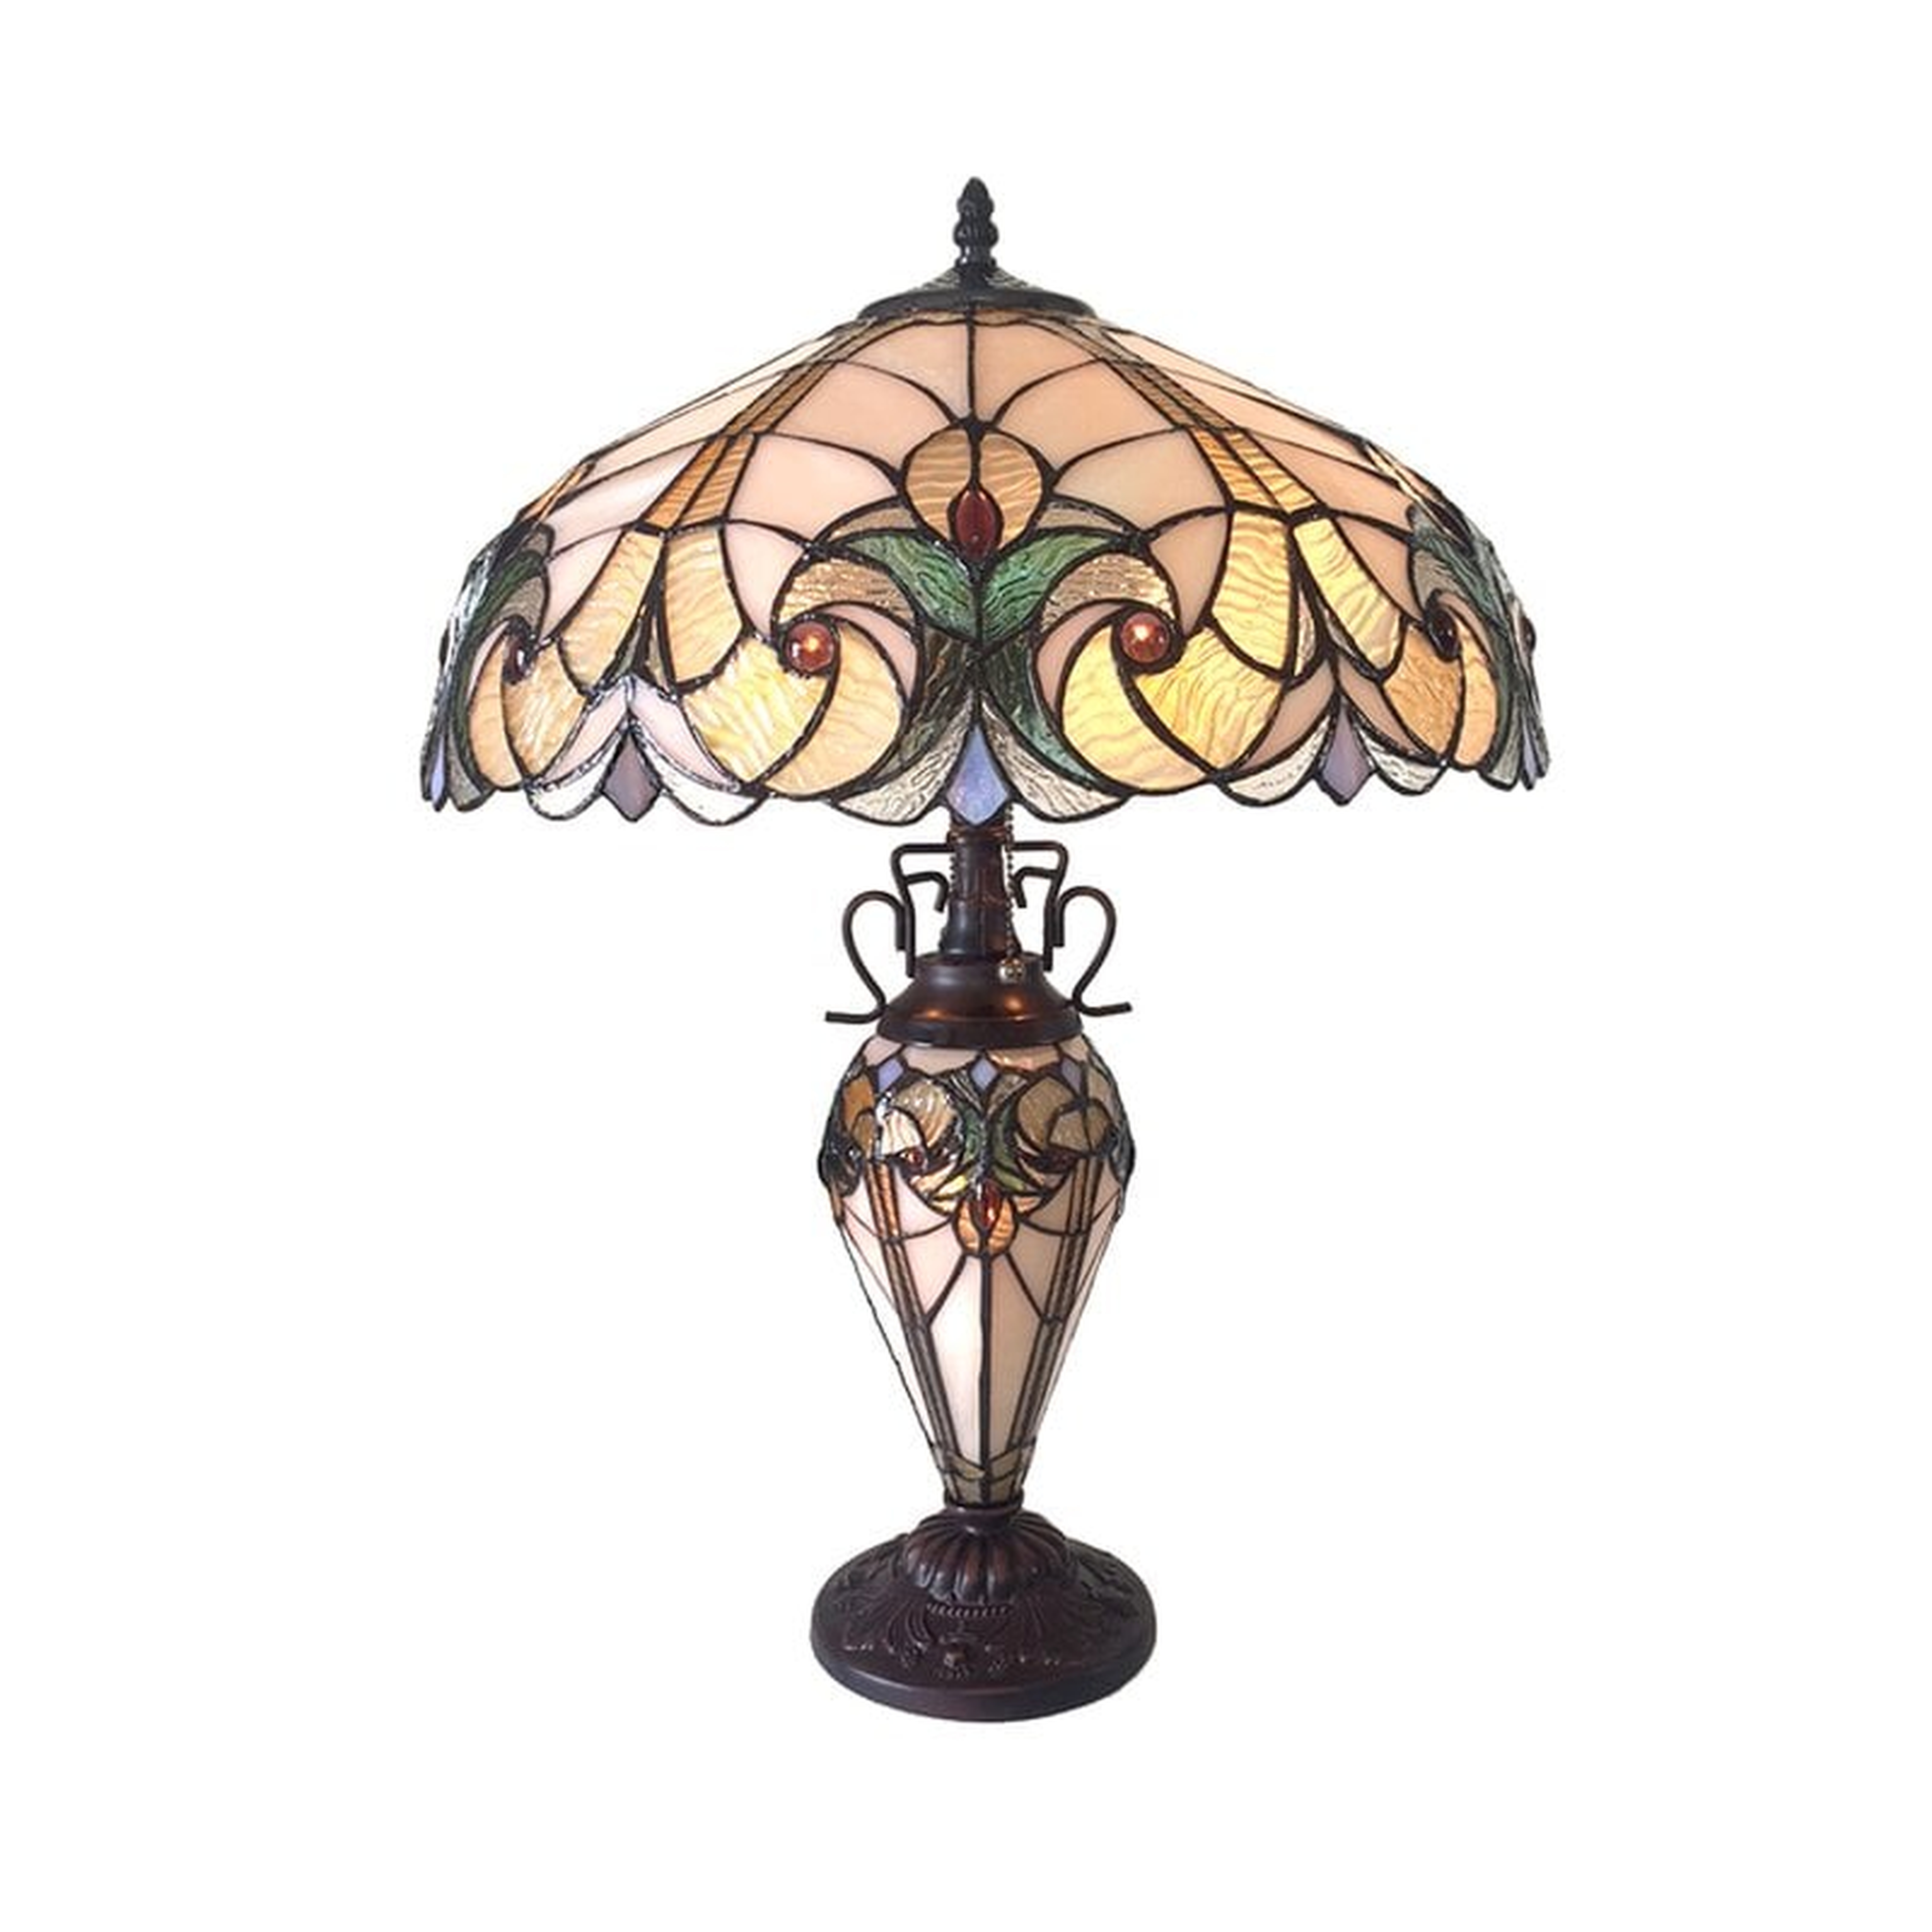 Aldan 24.5" Table Lamp - Wayfair